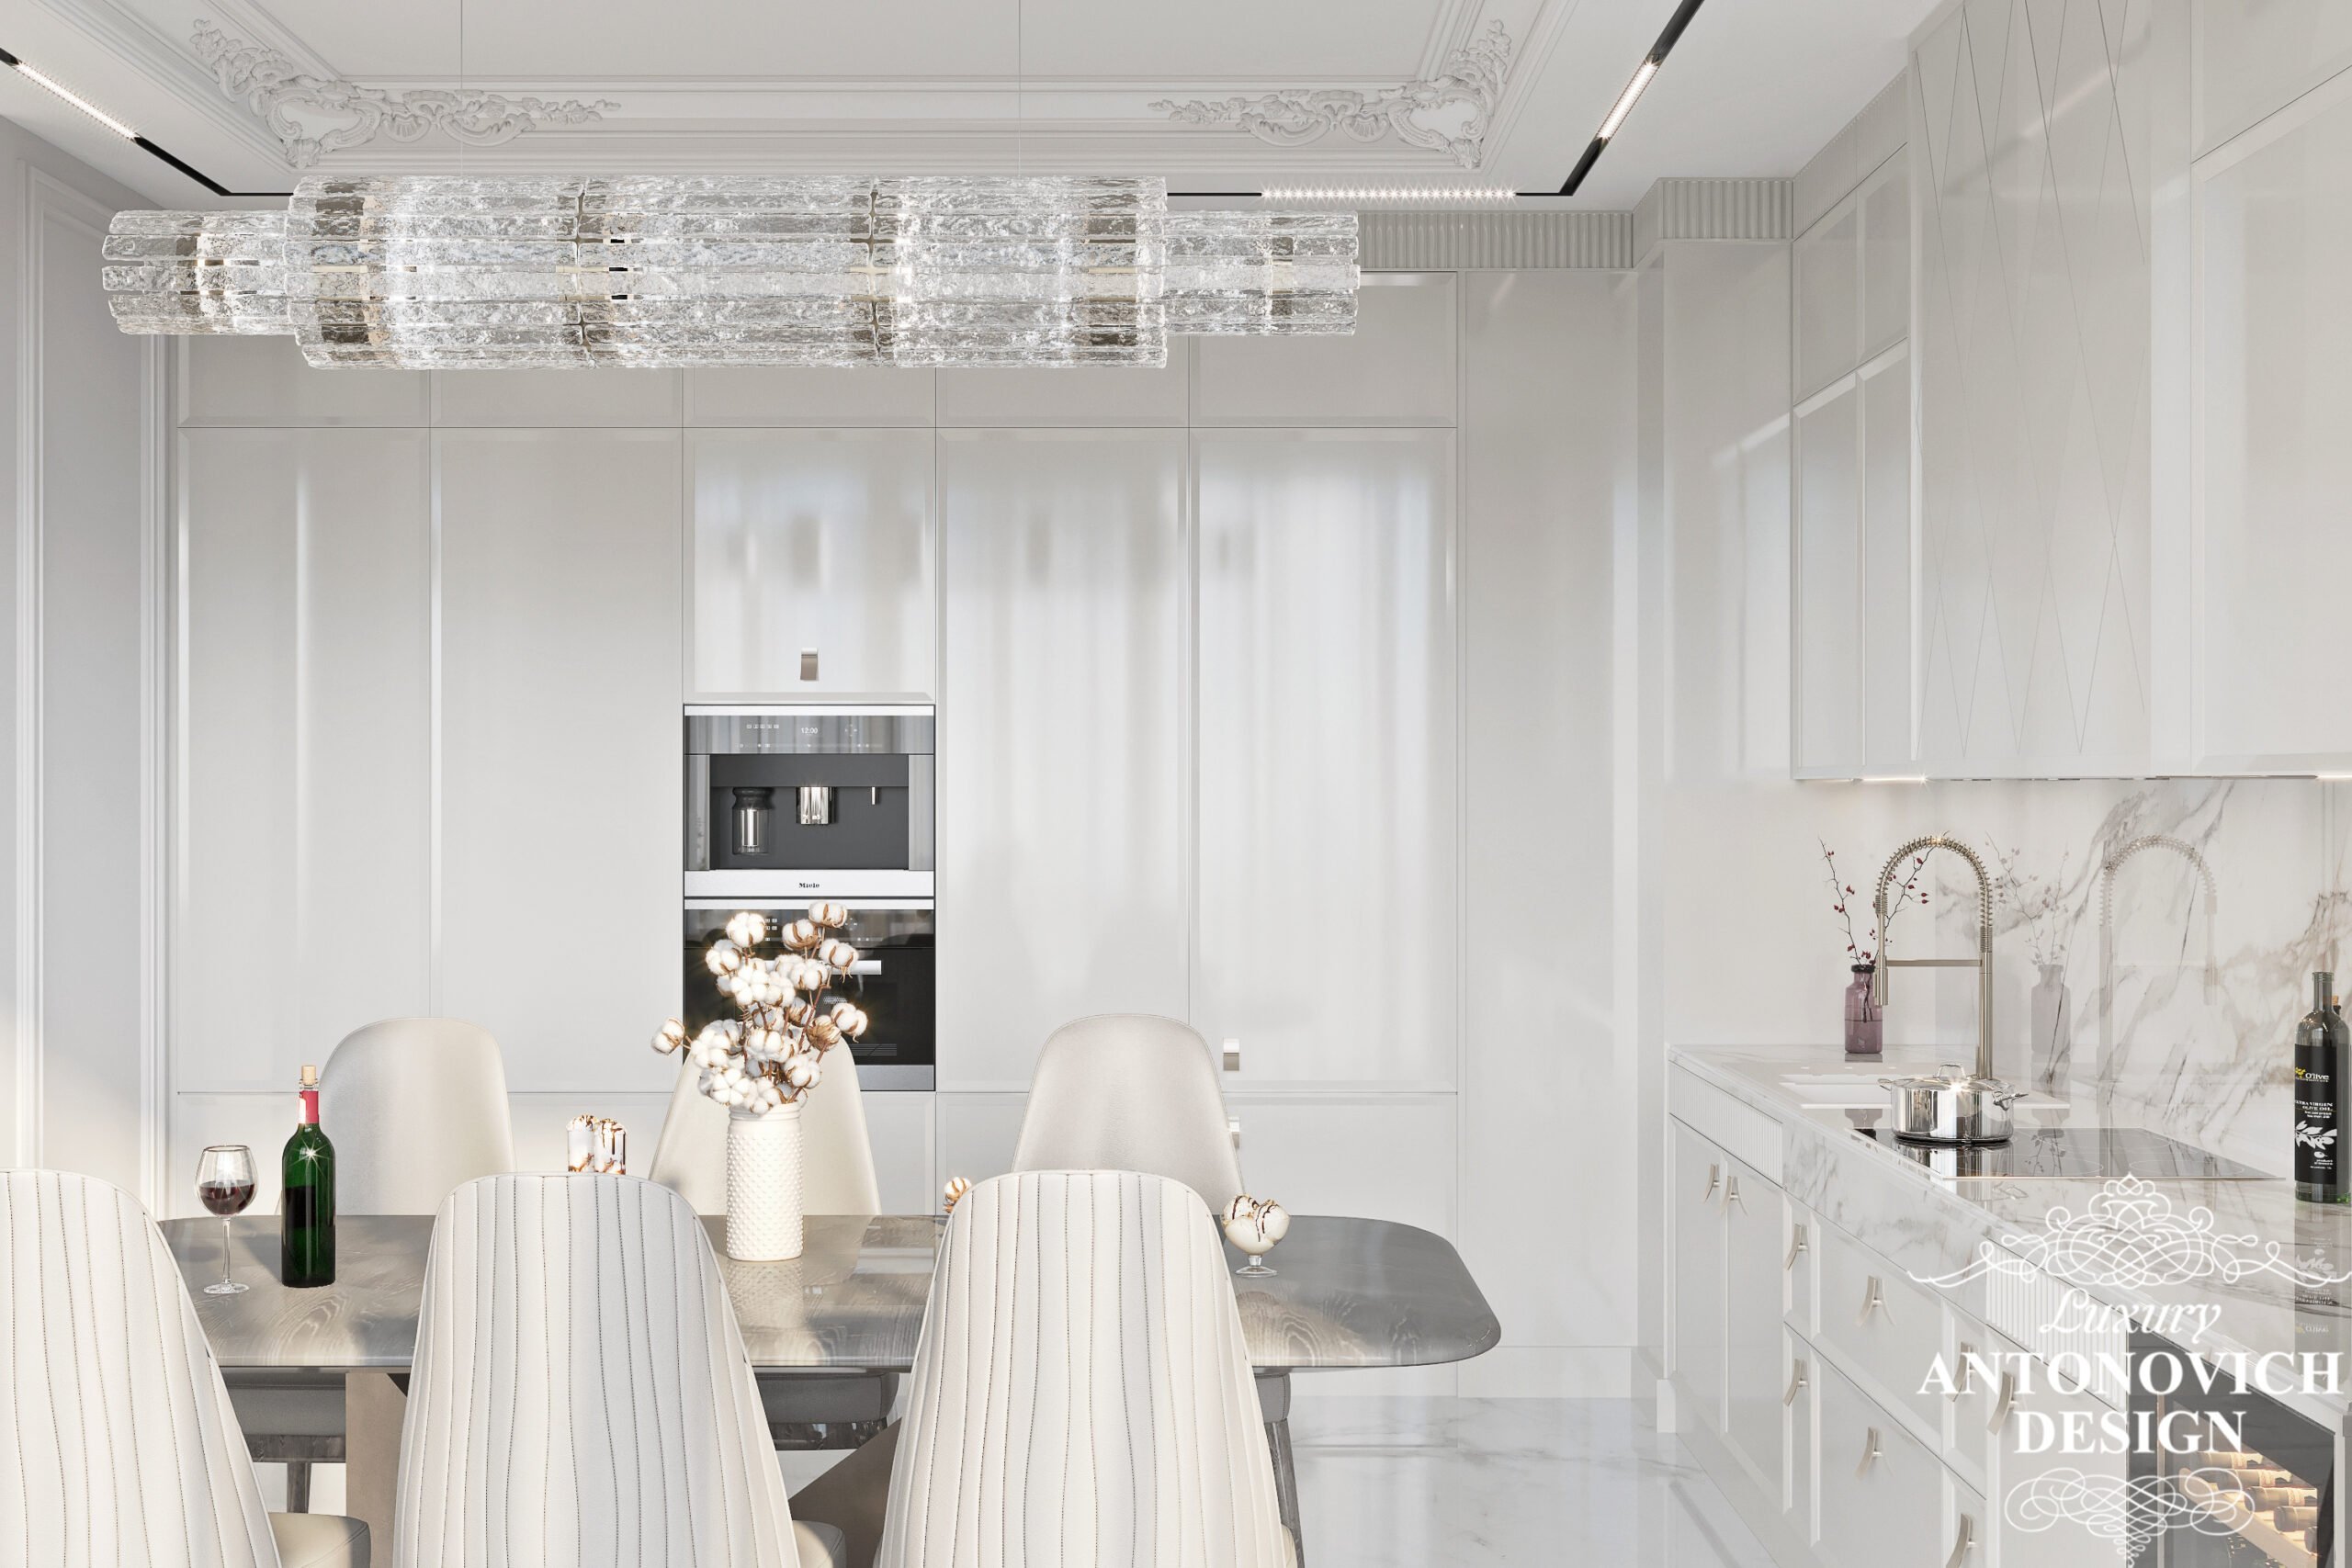 Облицовка из мрамора с мягкой обеденной группой в белых цветах в авторском дизайне кухни в квартире